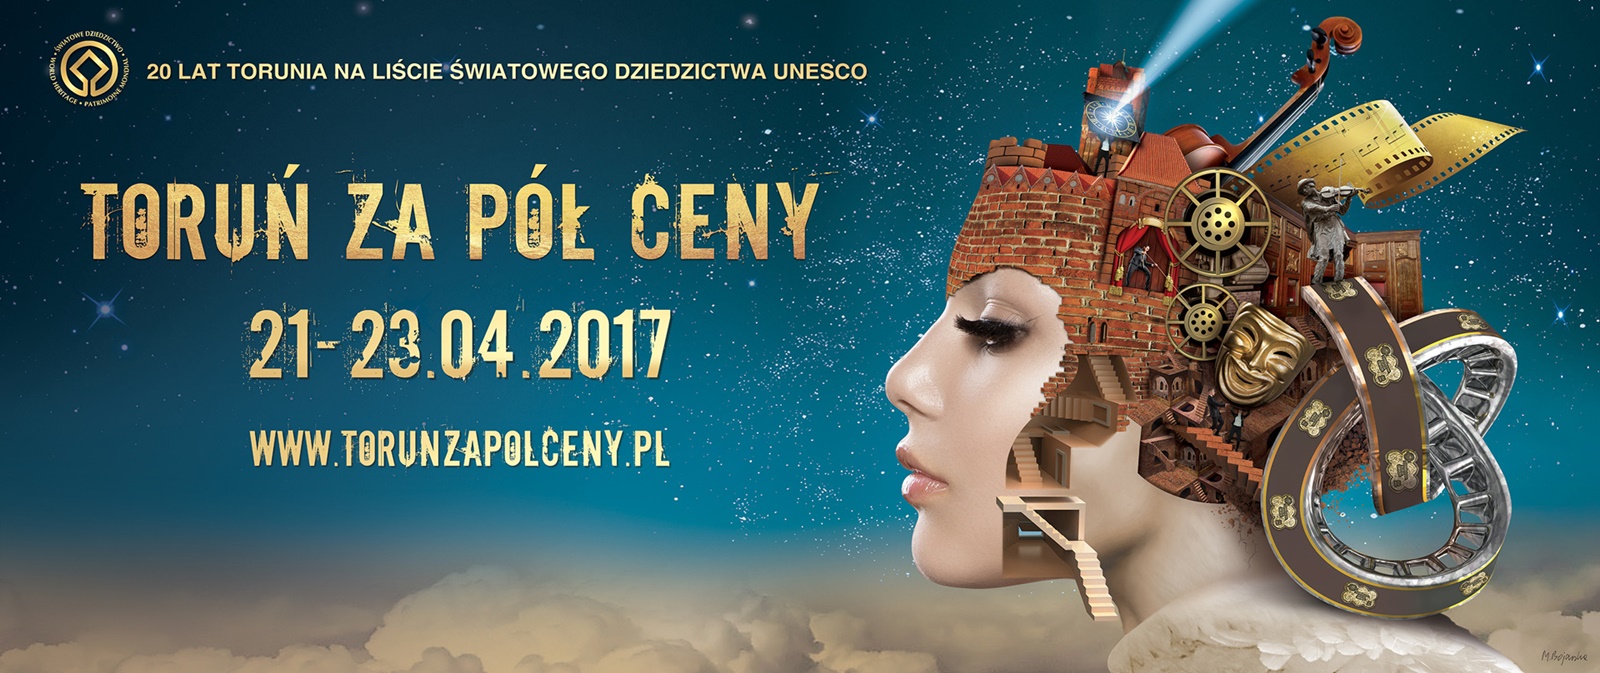 Toruń za pół ceny już 21-23 kwietnia – Kopernik stawia połowę!